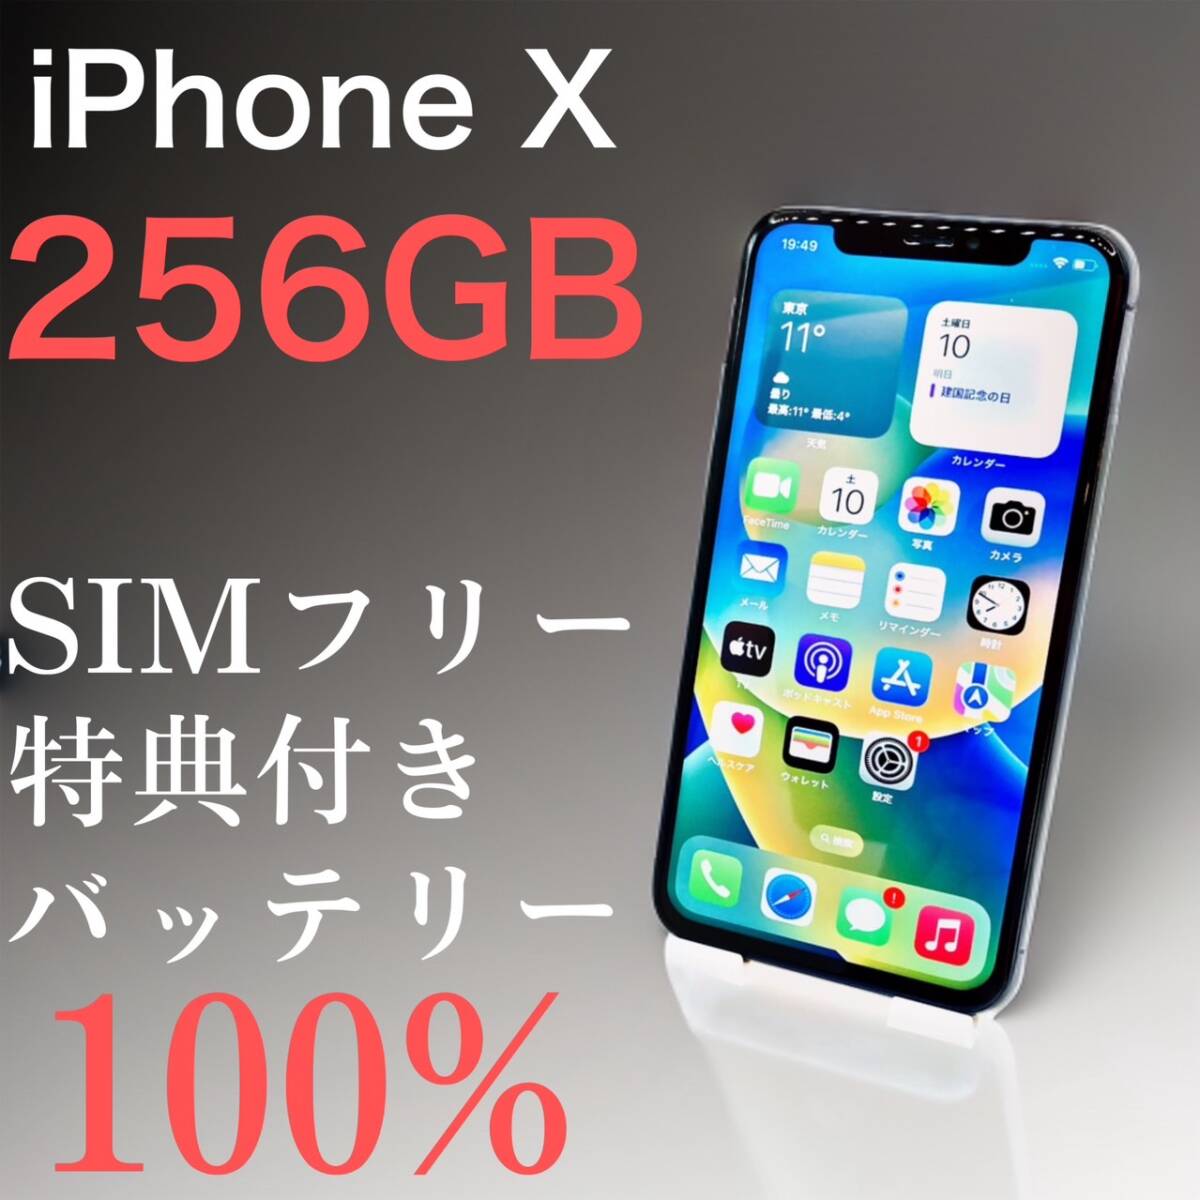 iPhone X 256GB スペースグレイ SIMフリー【特典付き】